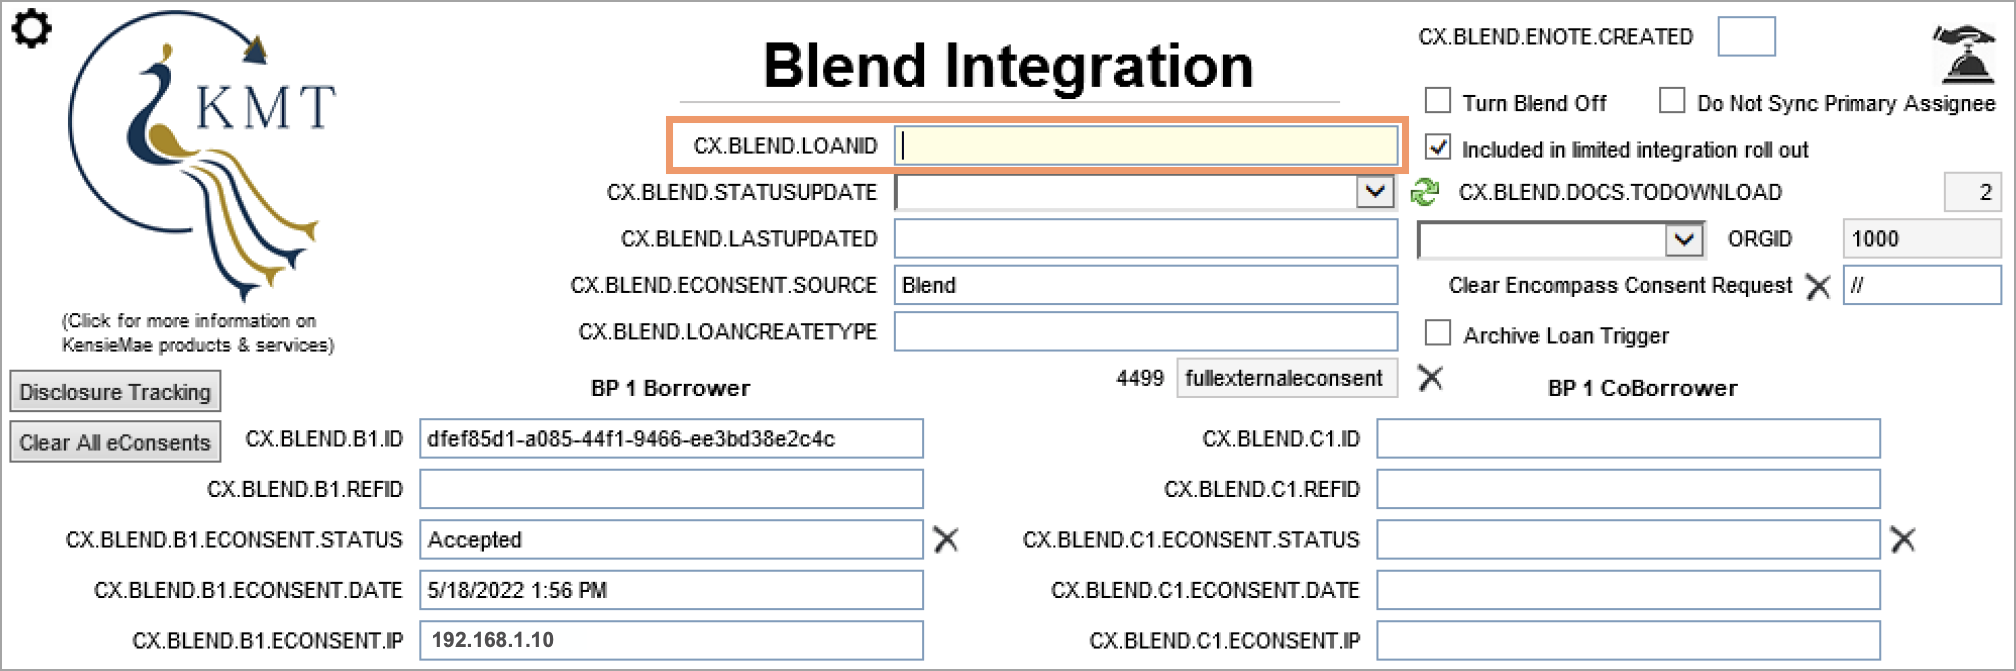 bled_integration_cxblendloanid.png